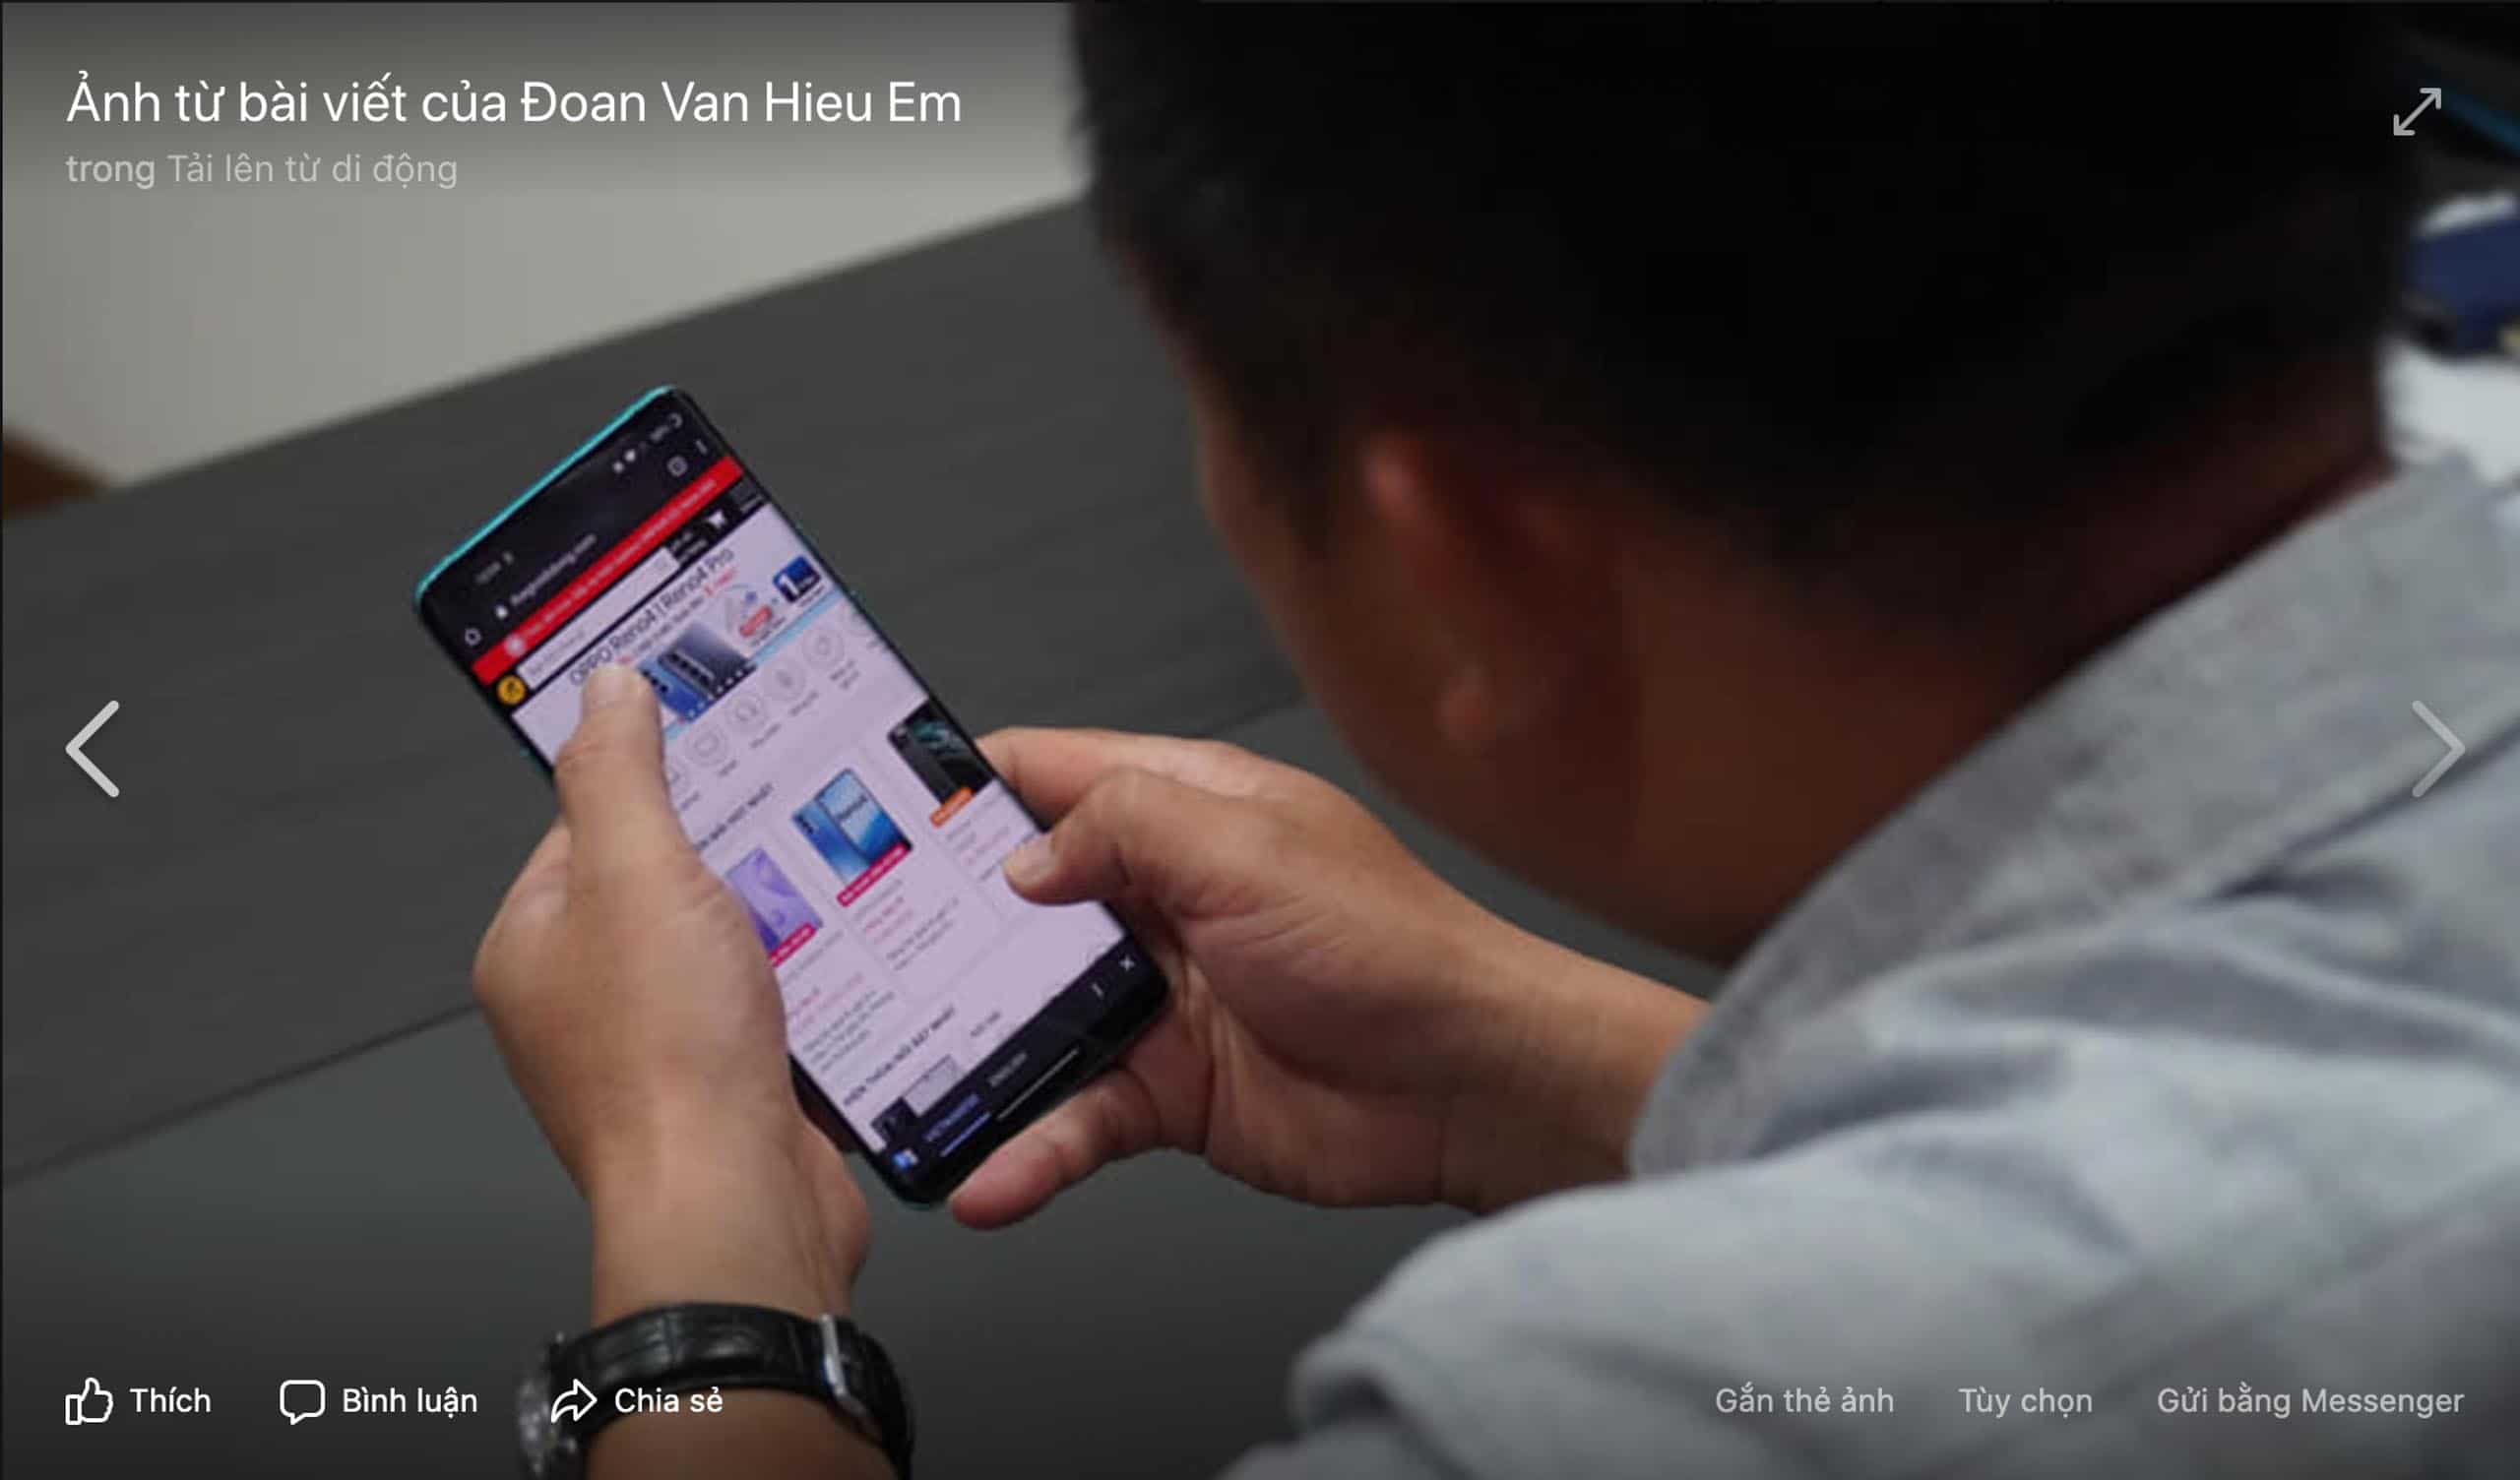 OnePlus sắp được bán chính hãng qua kênh bán lẻ smartphone lớn nhất Việt Nam?